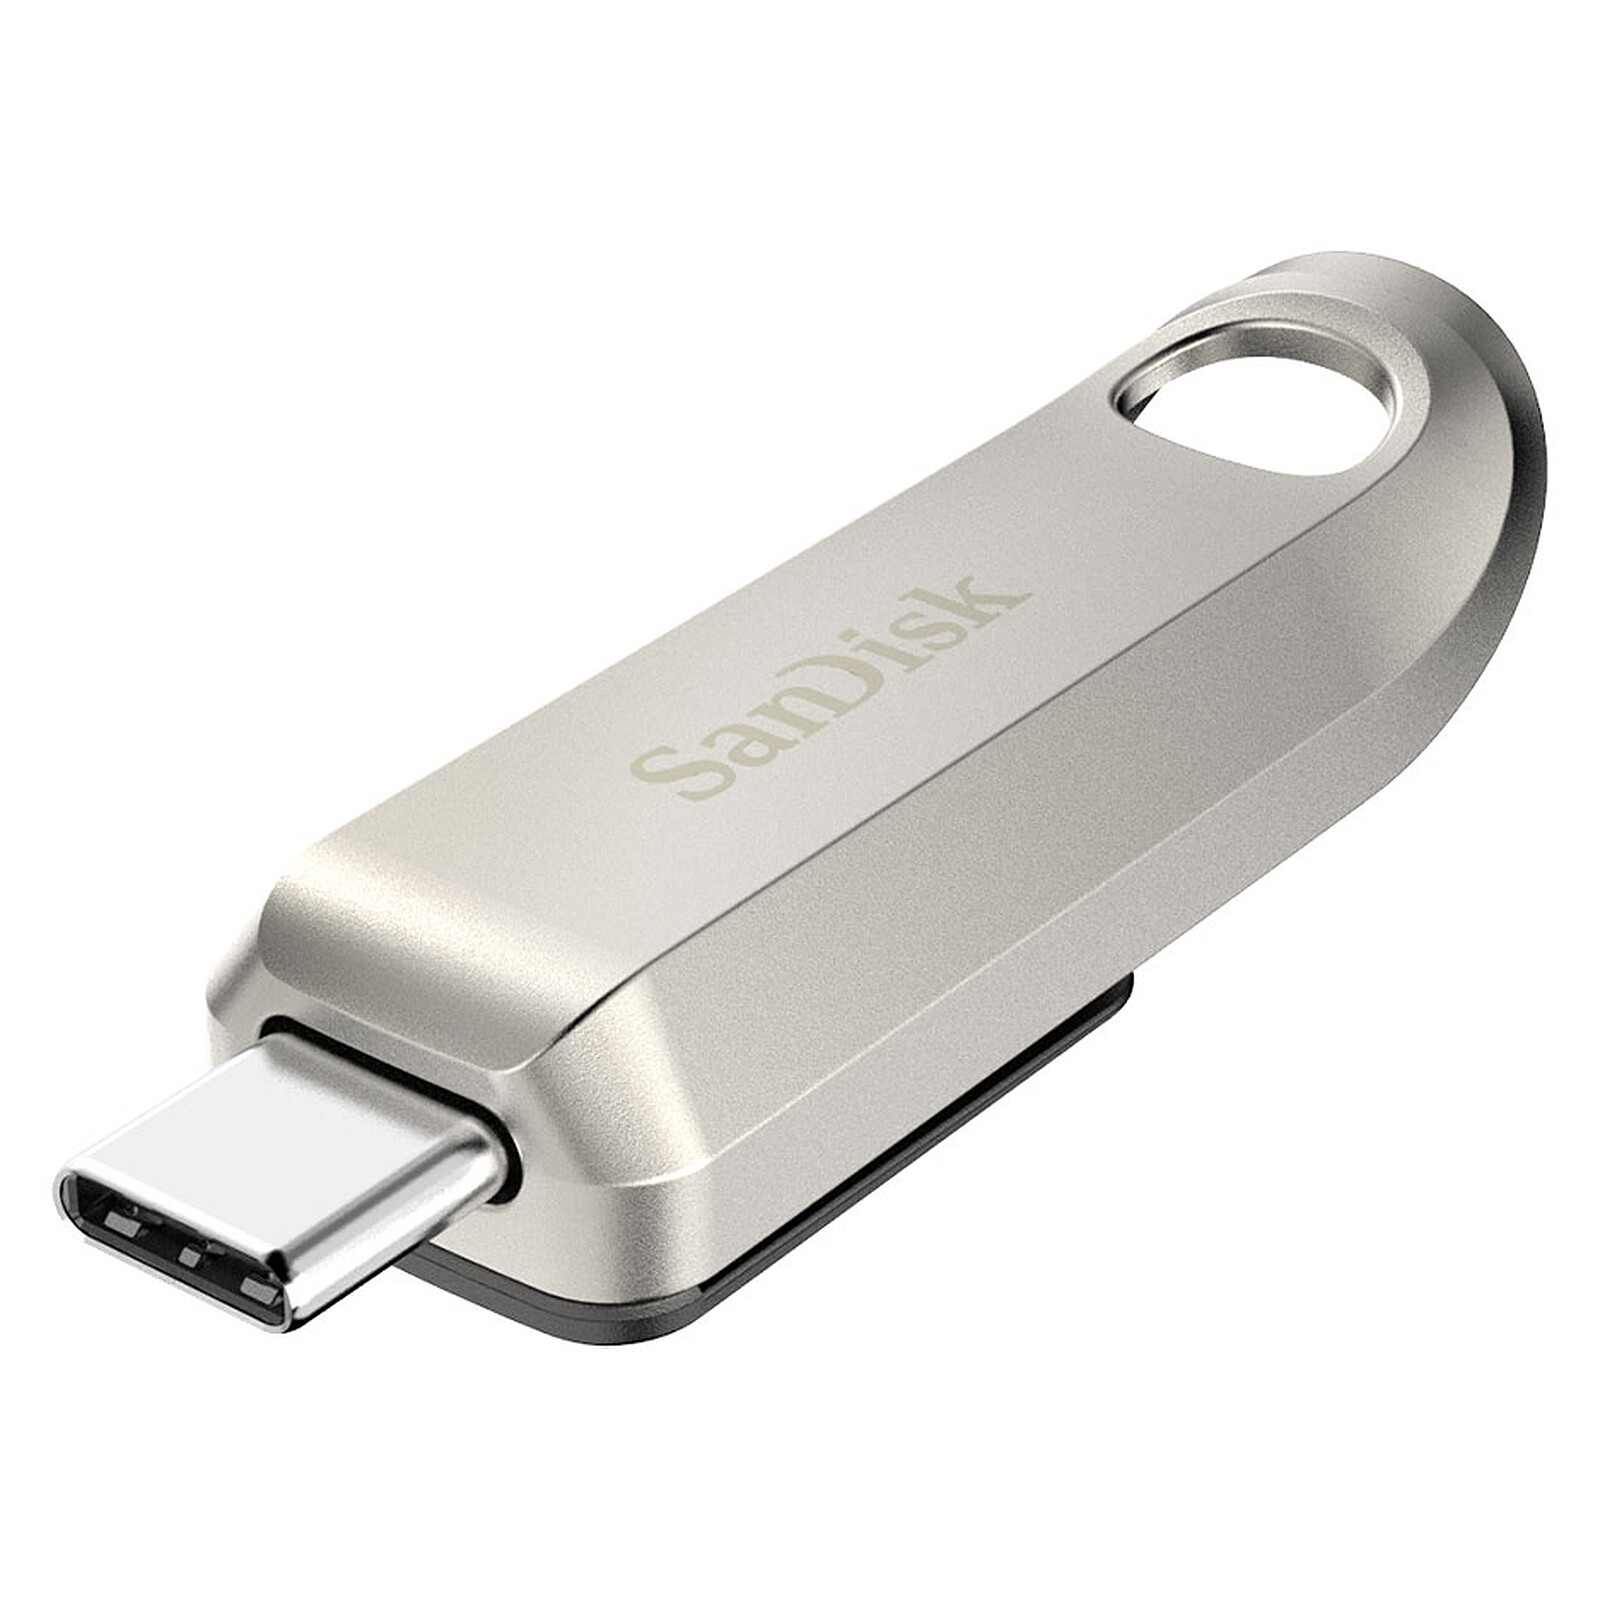 SanDisk Ultra - USB flash drive - 64 GB - USB 3.0 - sleek black